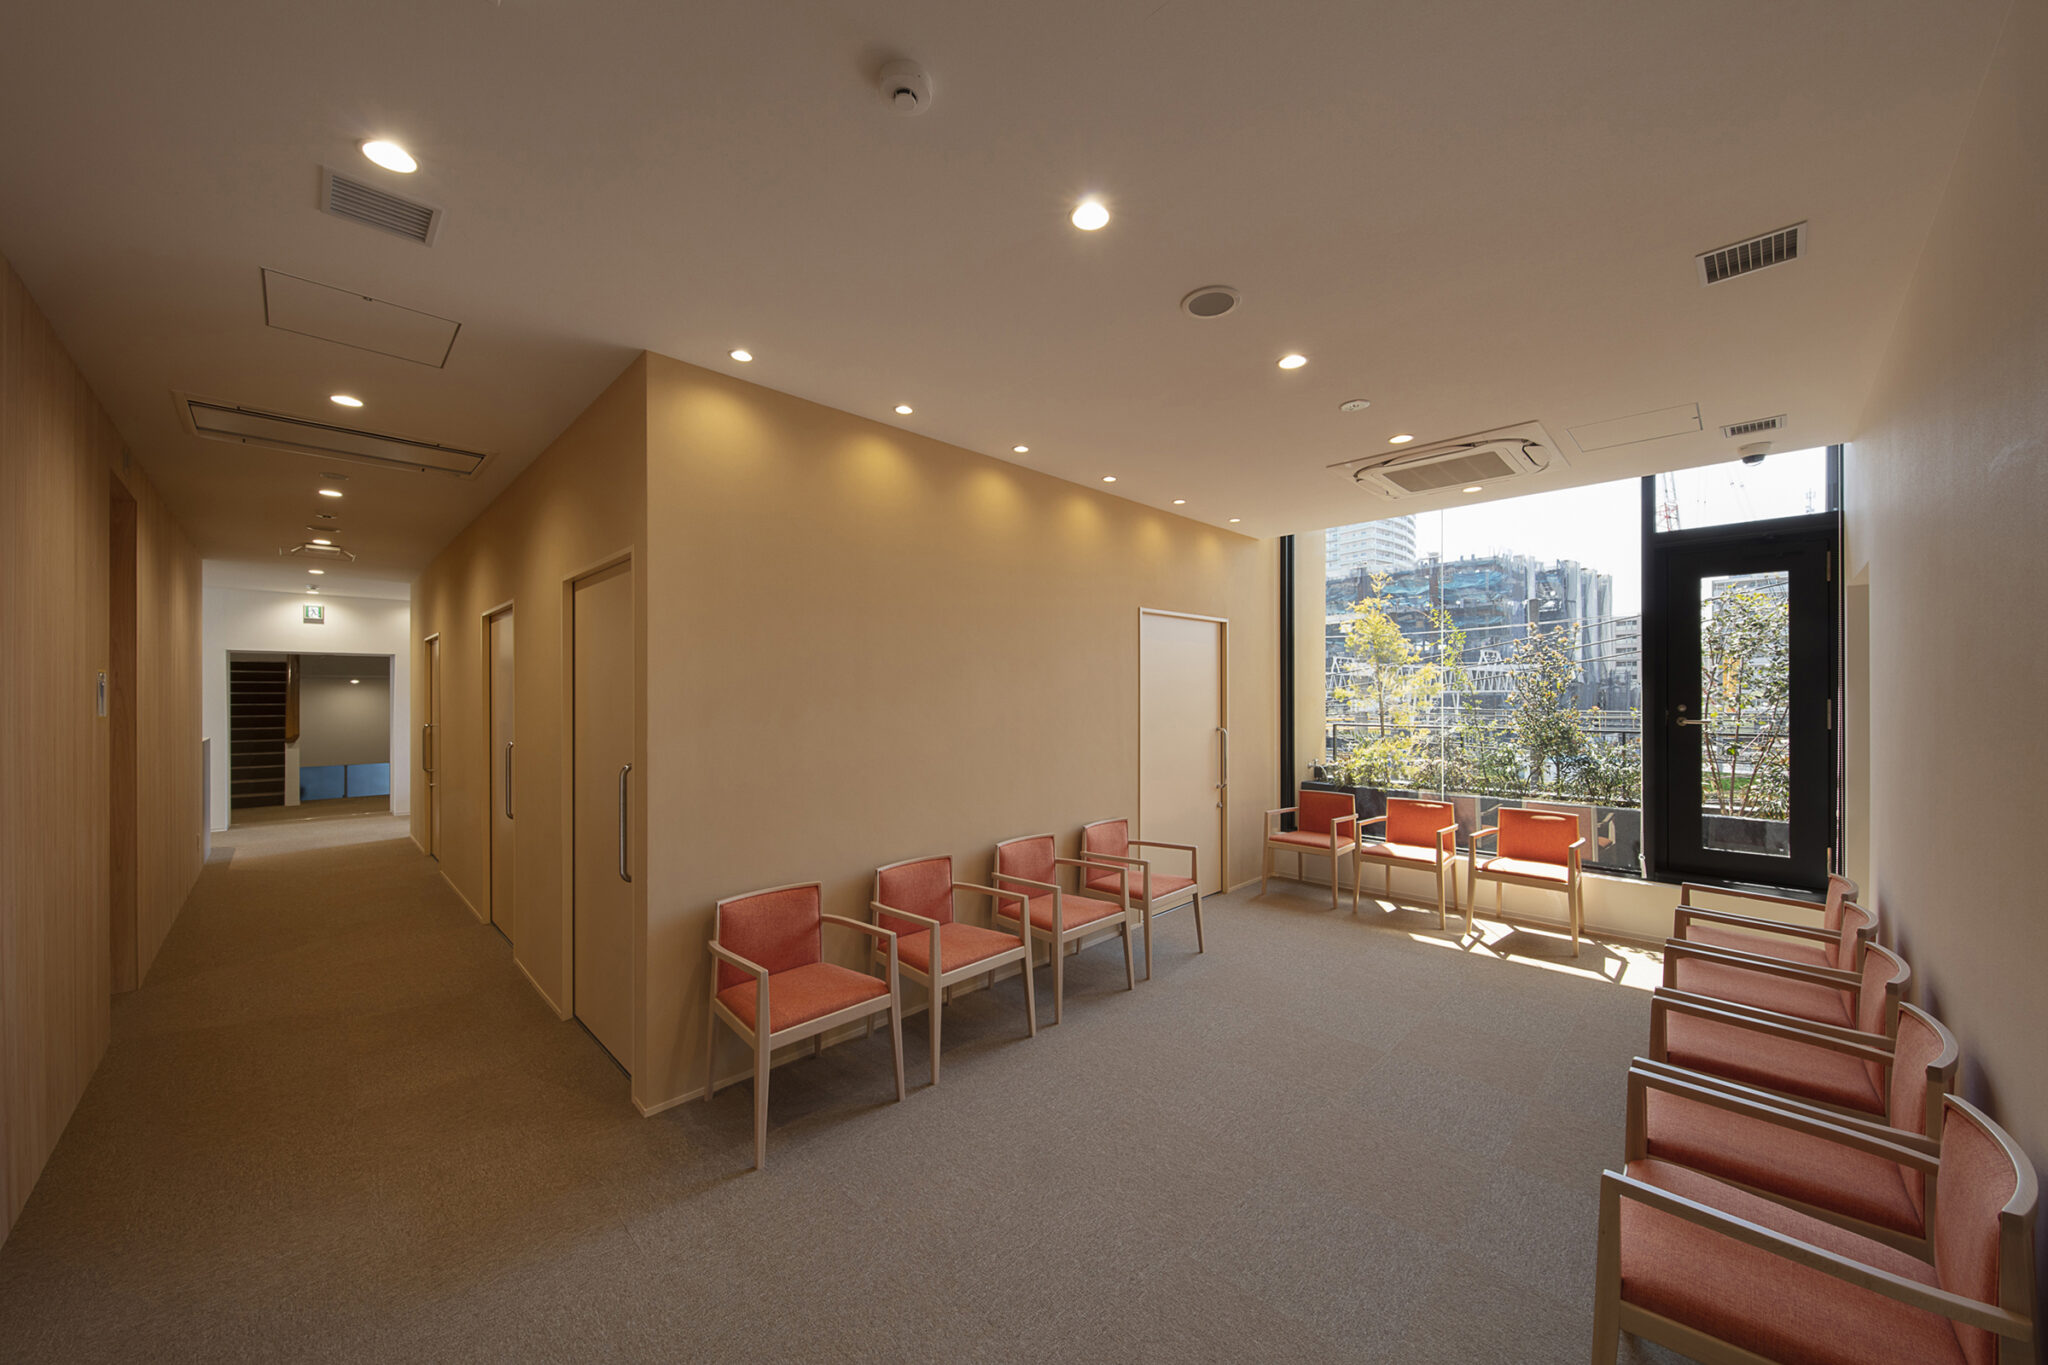 青木茂建築工房が改修を手掛けた、東京・品川区の「目黒クリニックビル」。礼拝所・事務所として50年使われた建物を更に50年以上使える診療所として